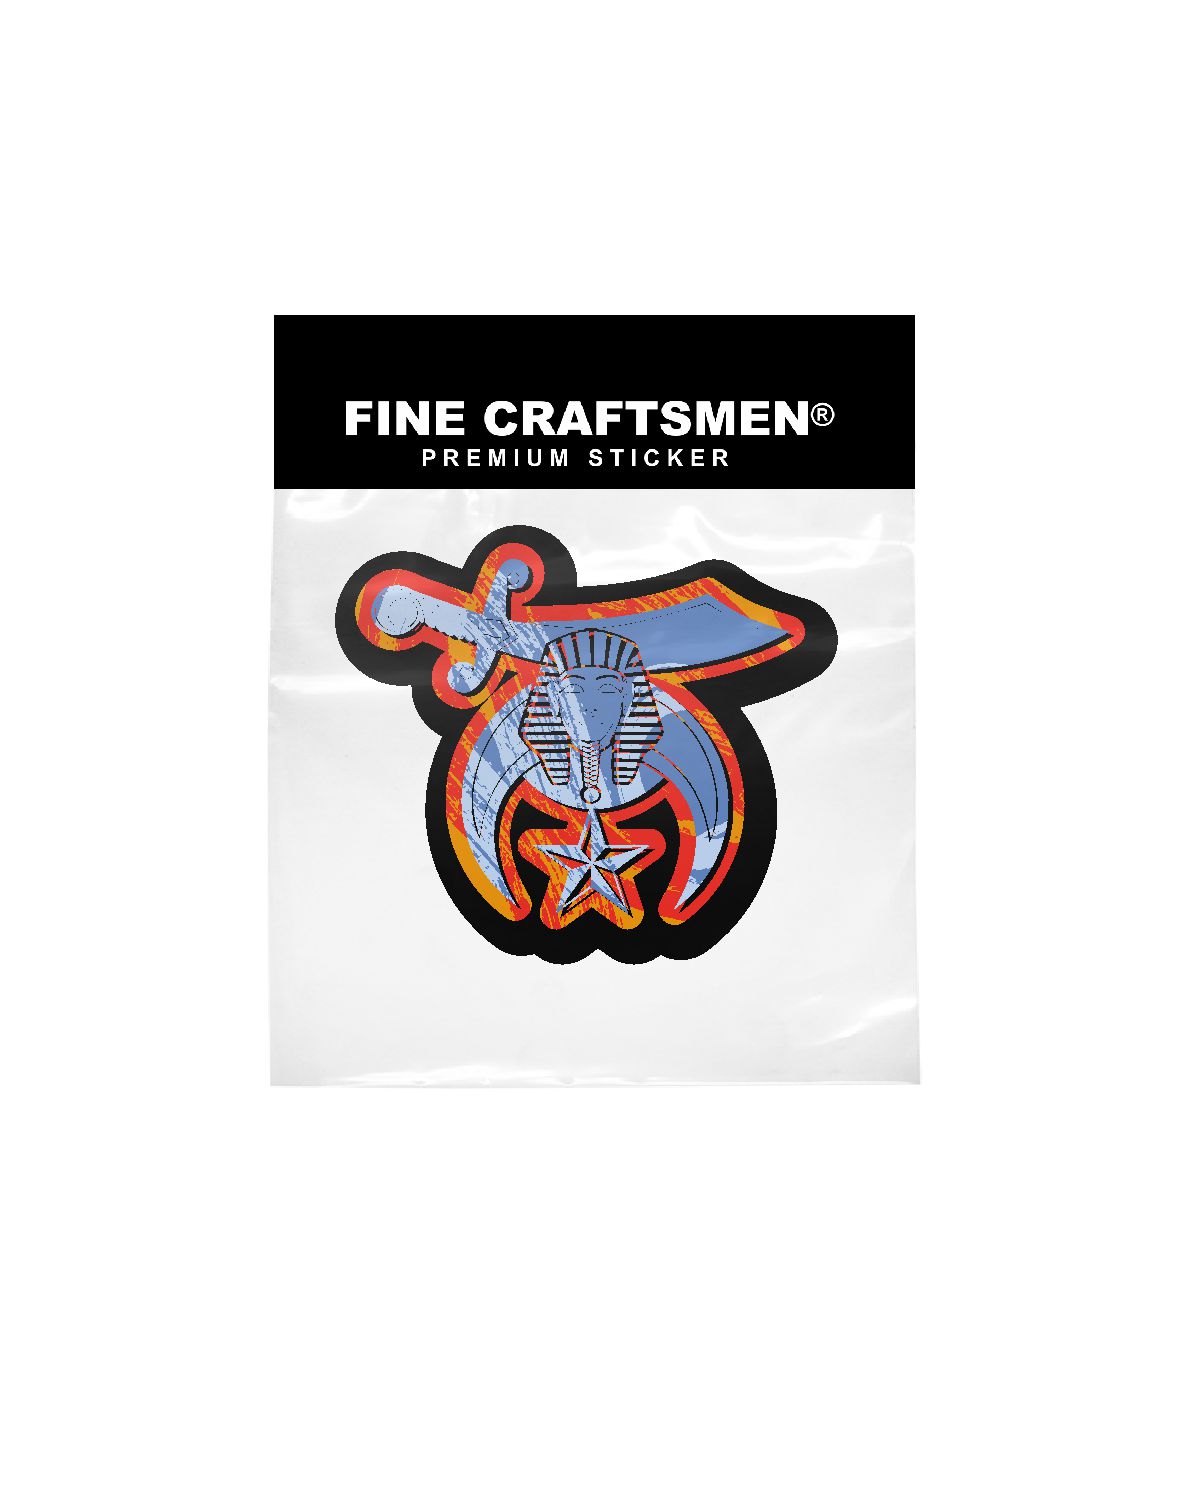 Fine Craftsmen® - Official Website